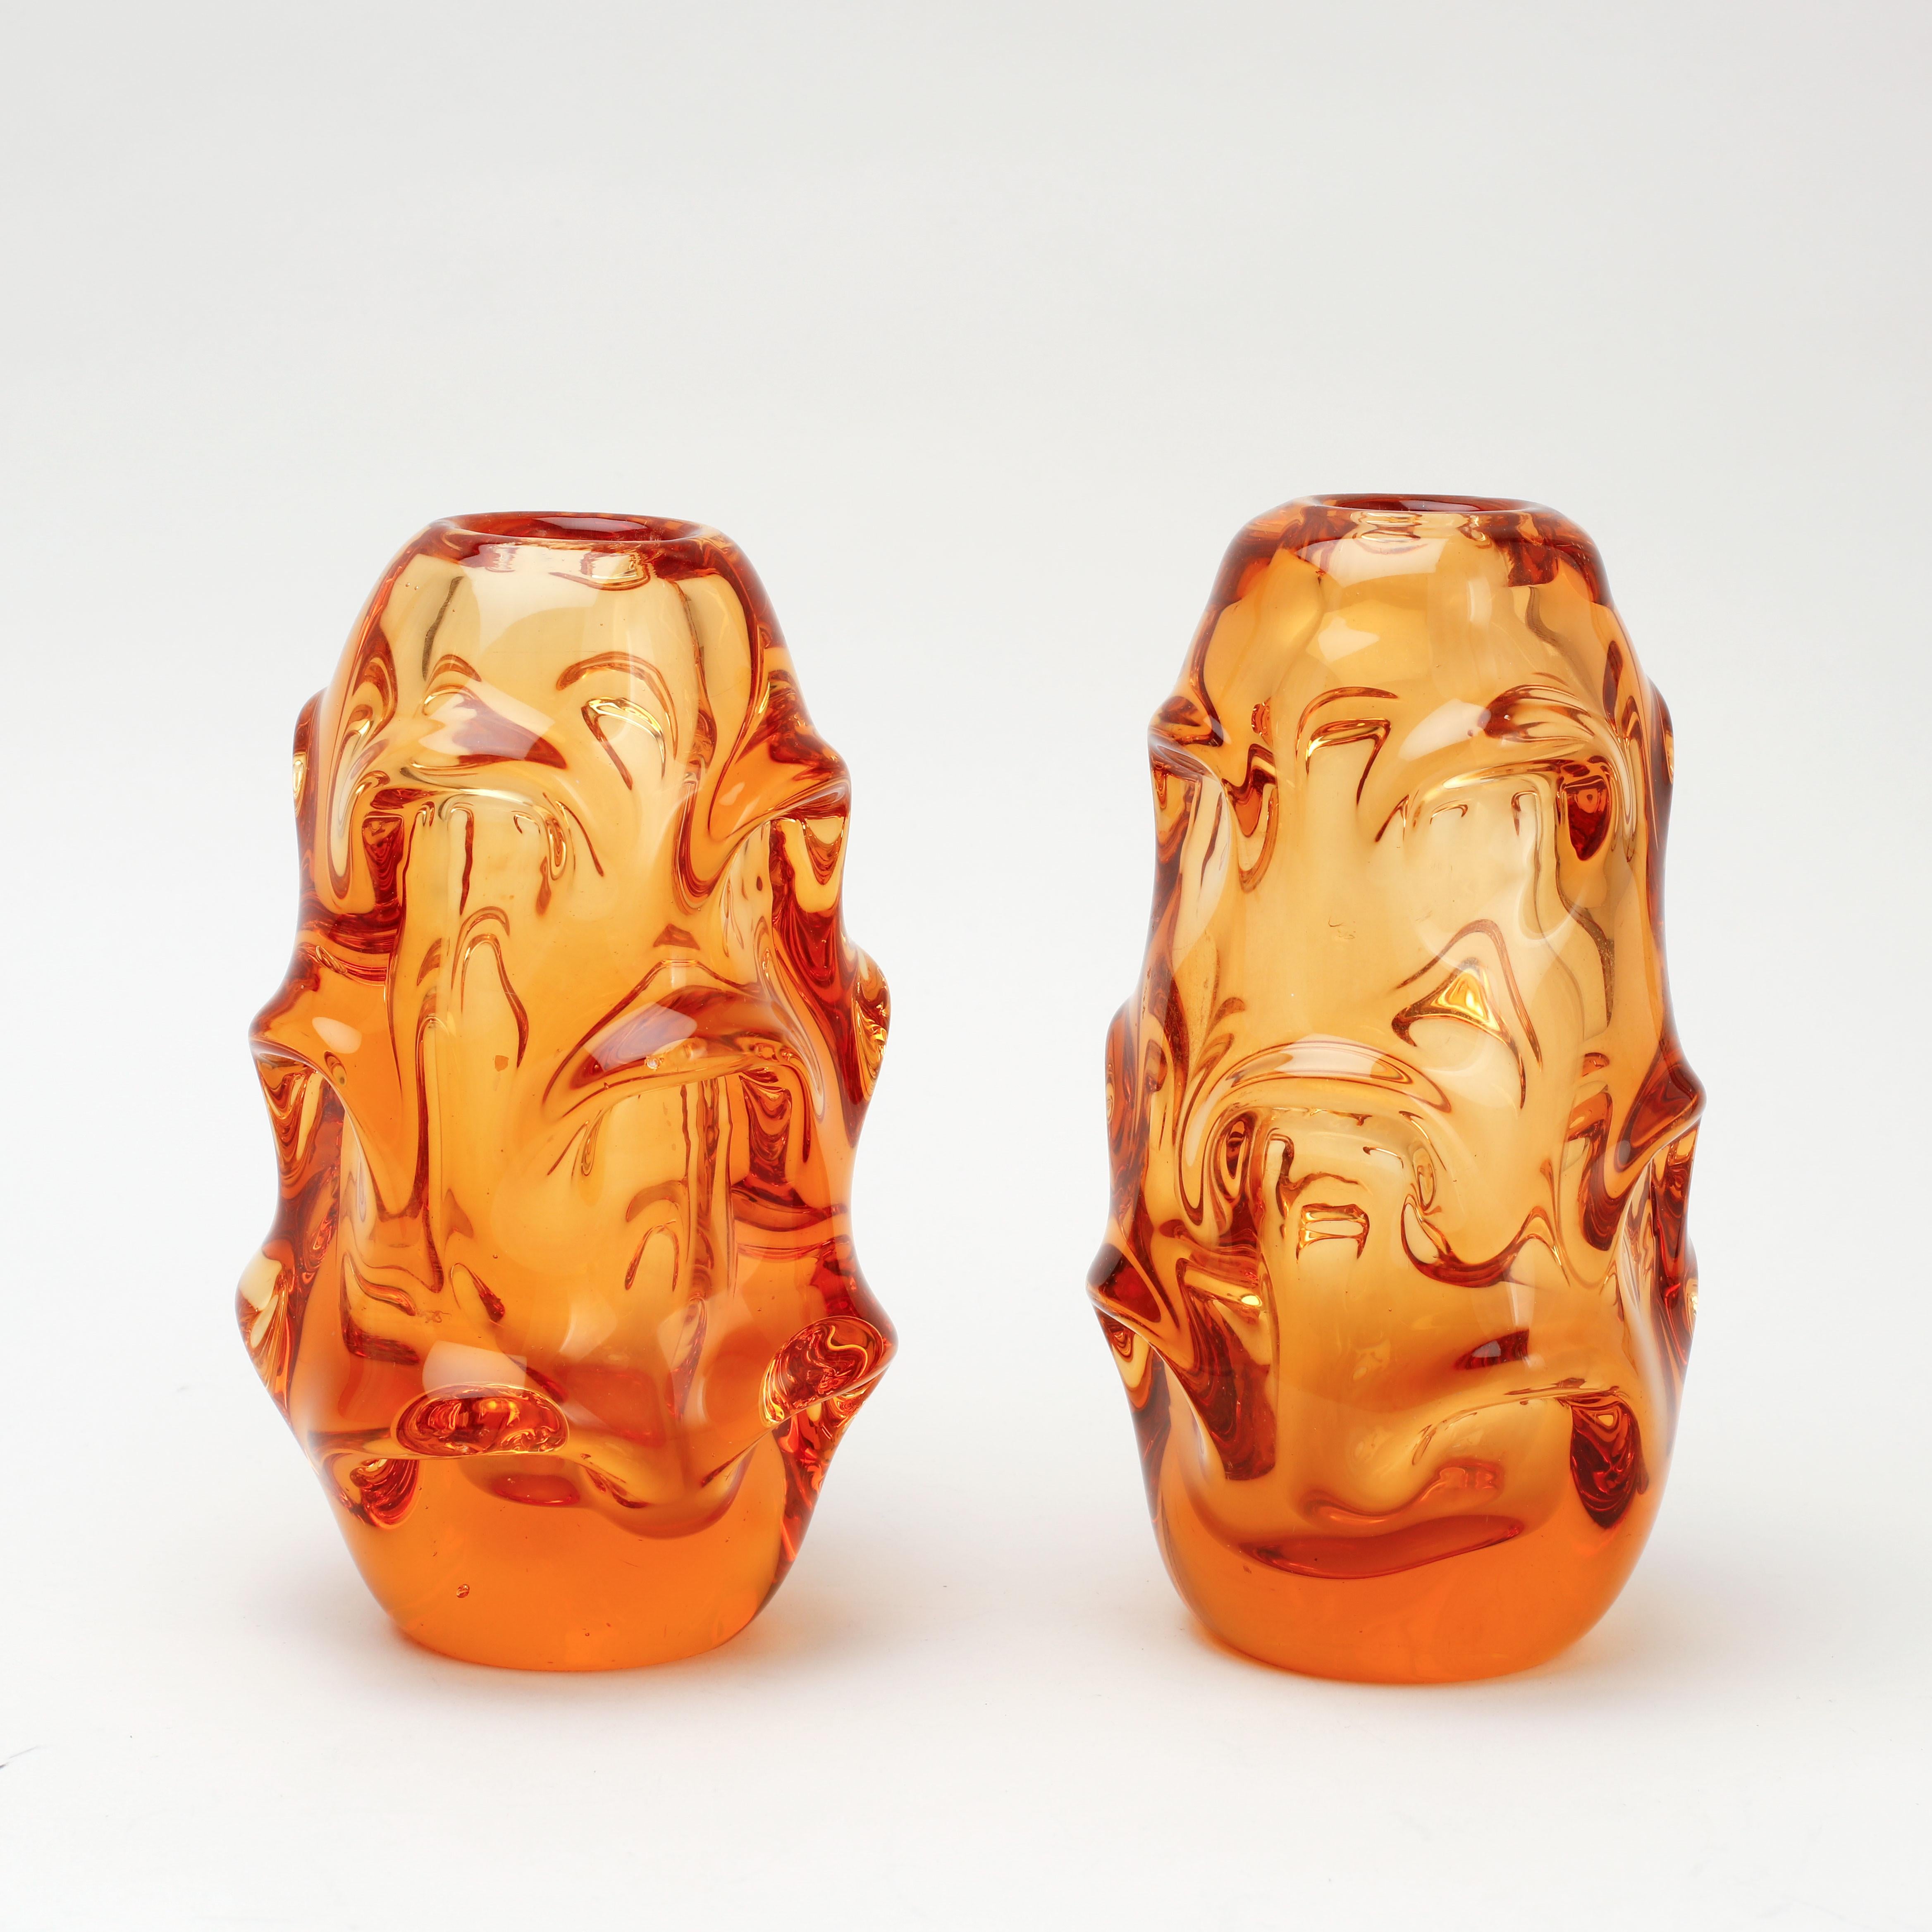 Deux vases en verre de forme souple de style scandinave moderne, Börne Augustsson, suédois, du milieu du siècle dernier, en verre ambré. Fabriqué par Åseda (non signé), vers 1948.